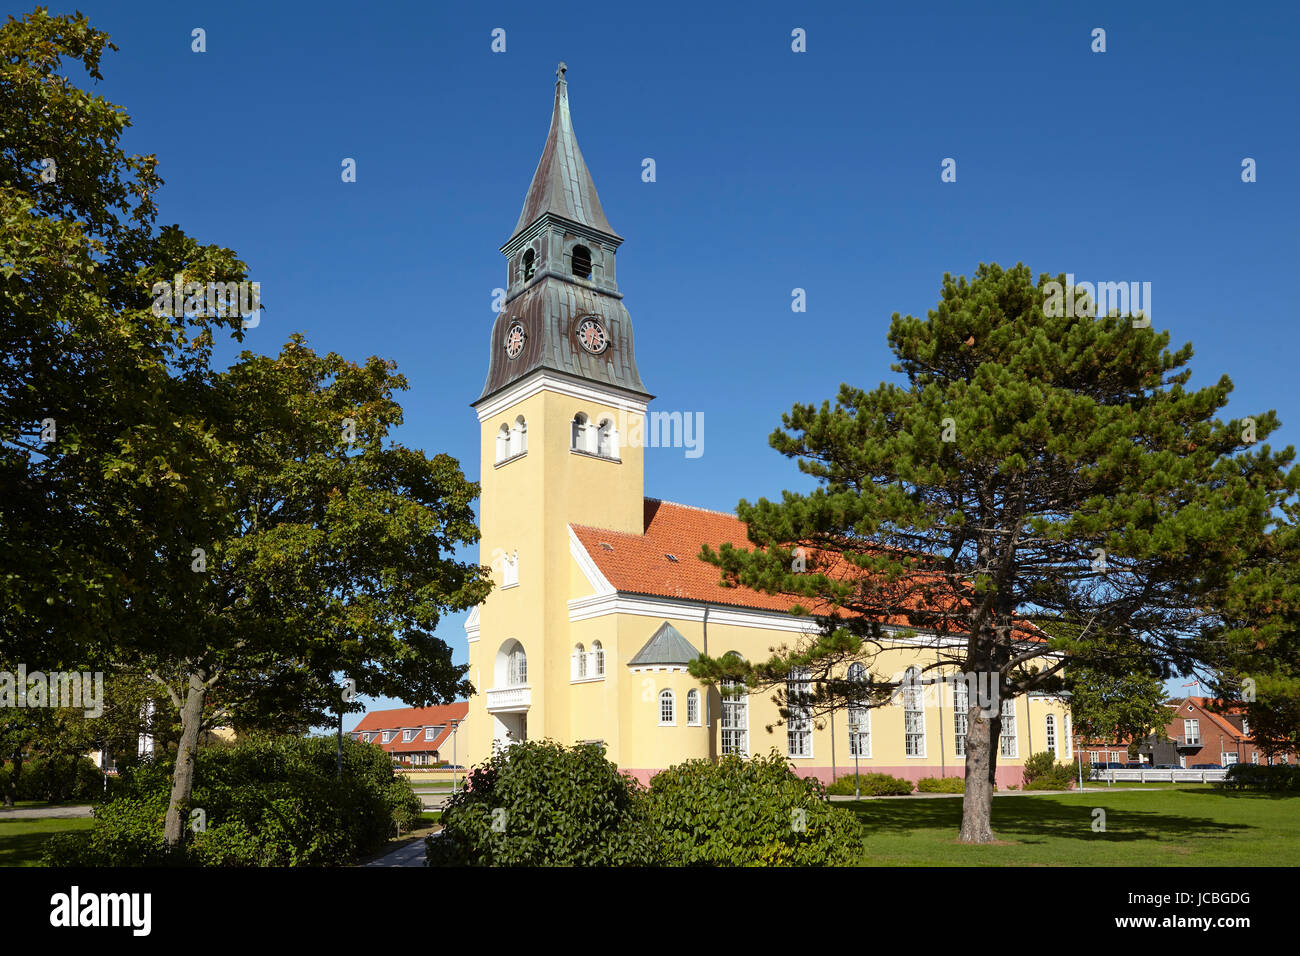 Die Kirche in Skagen (Dänemark, Nordjütland) ist in den typischen architektonischen Stil und Farben mit Ochraceous Wänden, ein rotes Dach und weißen gemeinsame gebaut. Stockfoto